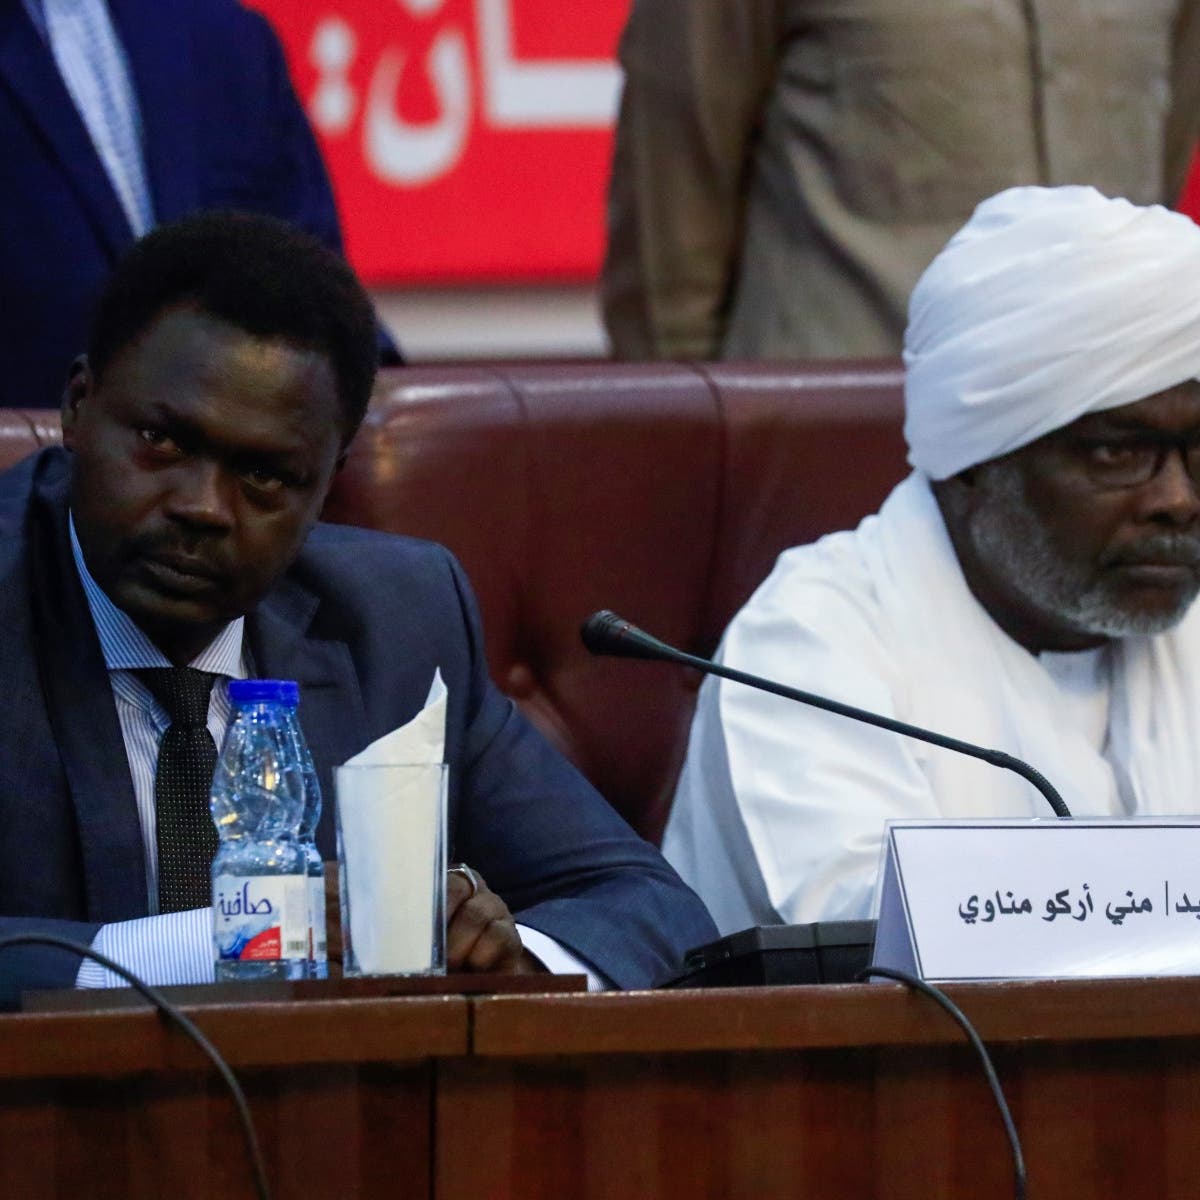 حاكم دارفور:نرفض طريقة إدارة الفترة الانتقالية بالسودان